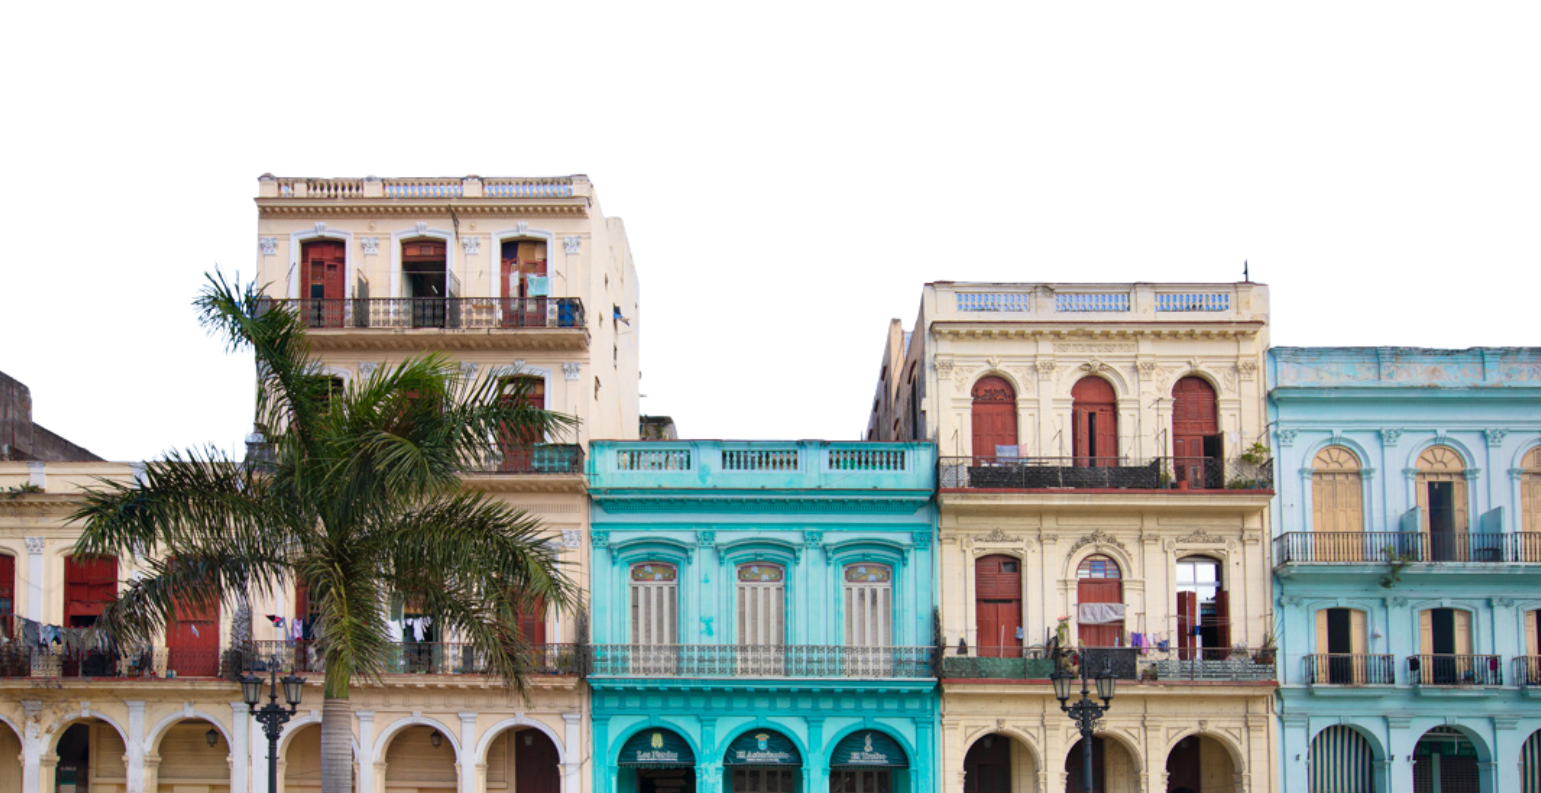 Havana Buildings